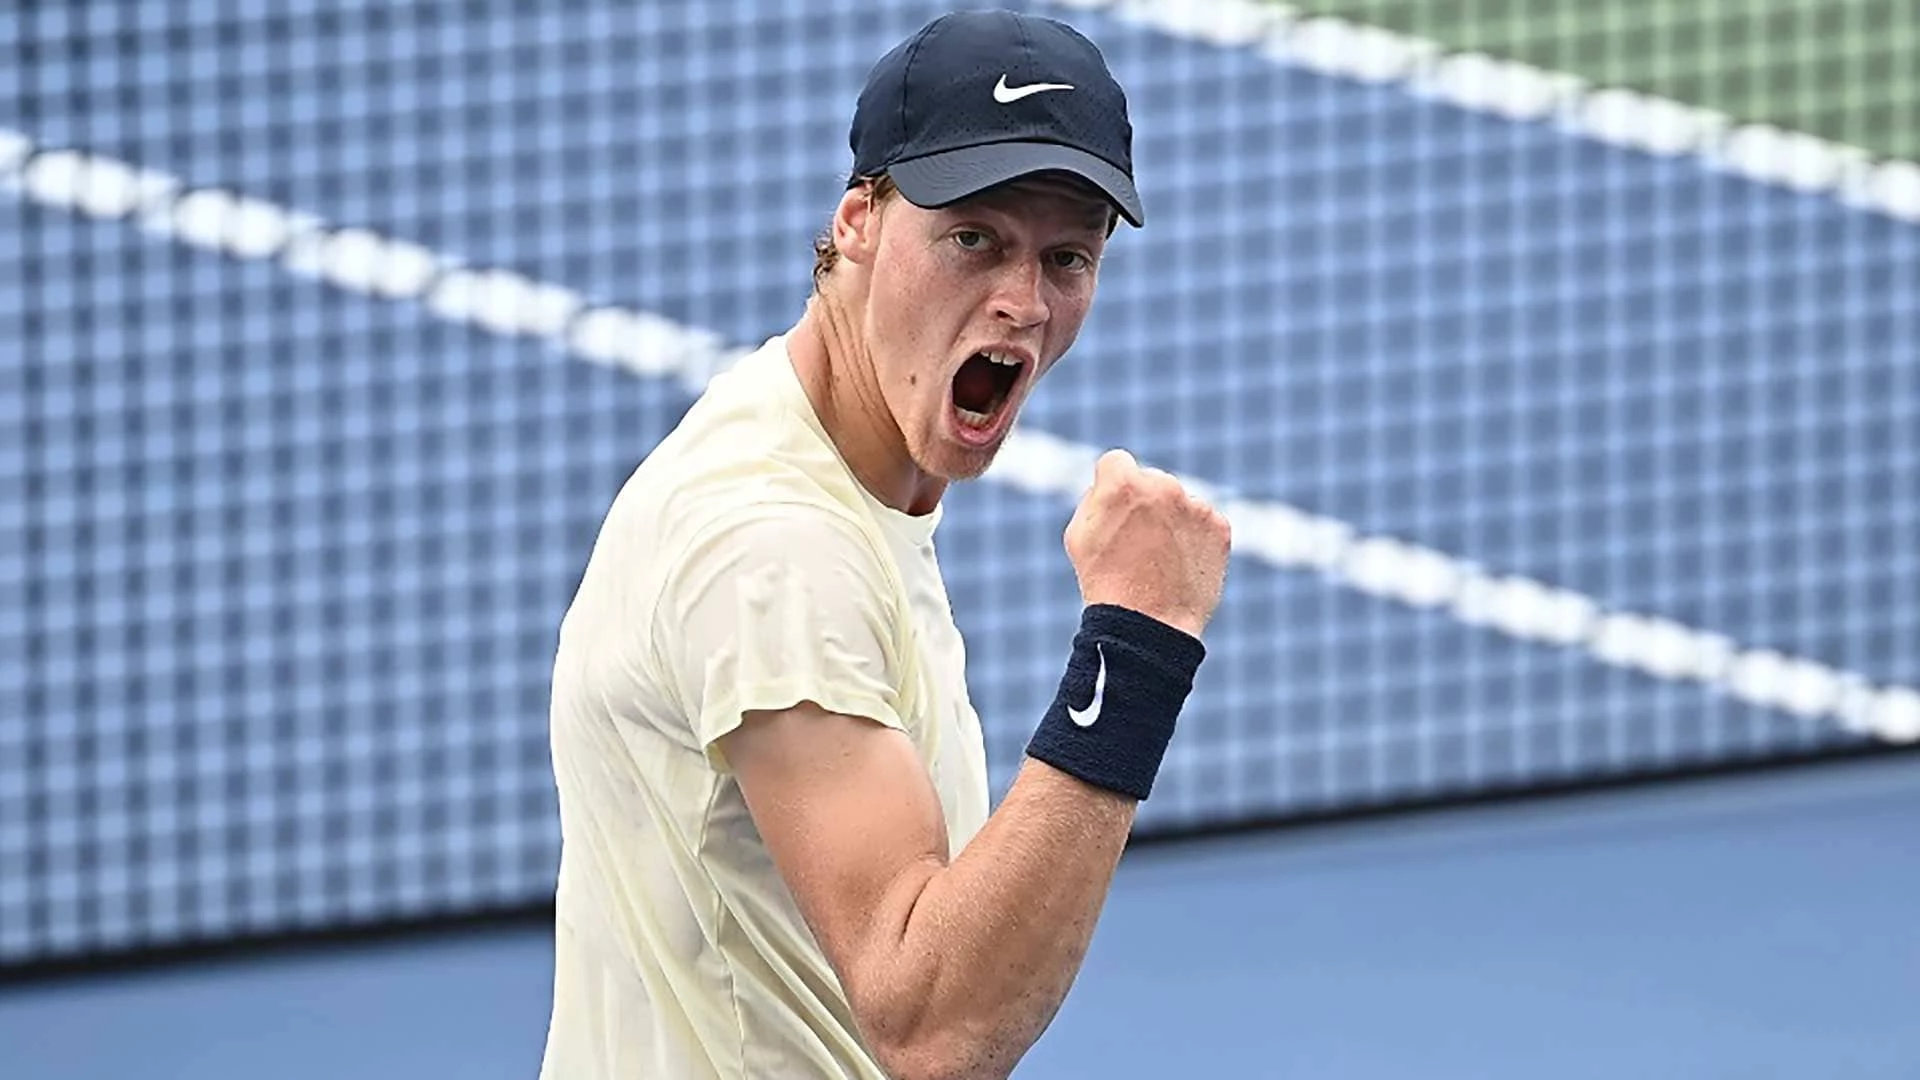 Деннис Новак - Янник Синнер. Прогноз на матч ATP Вена (28 октября 2021 года)
